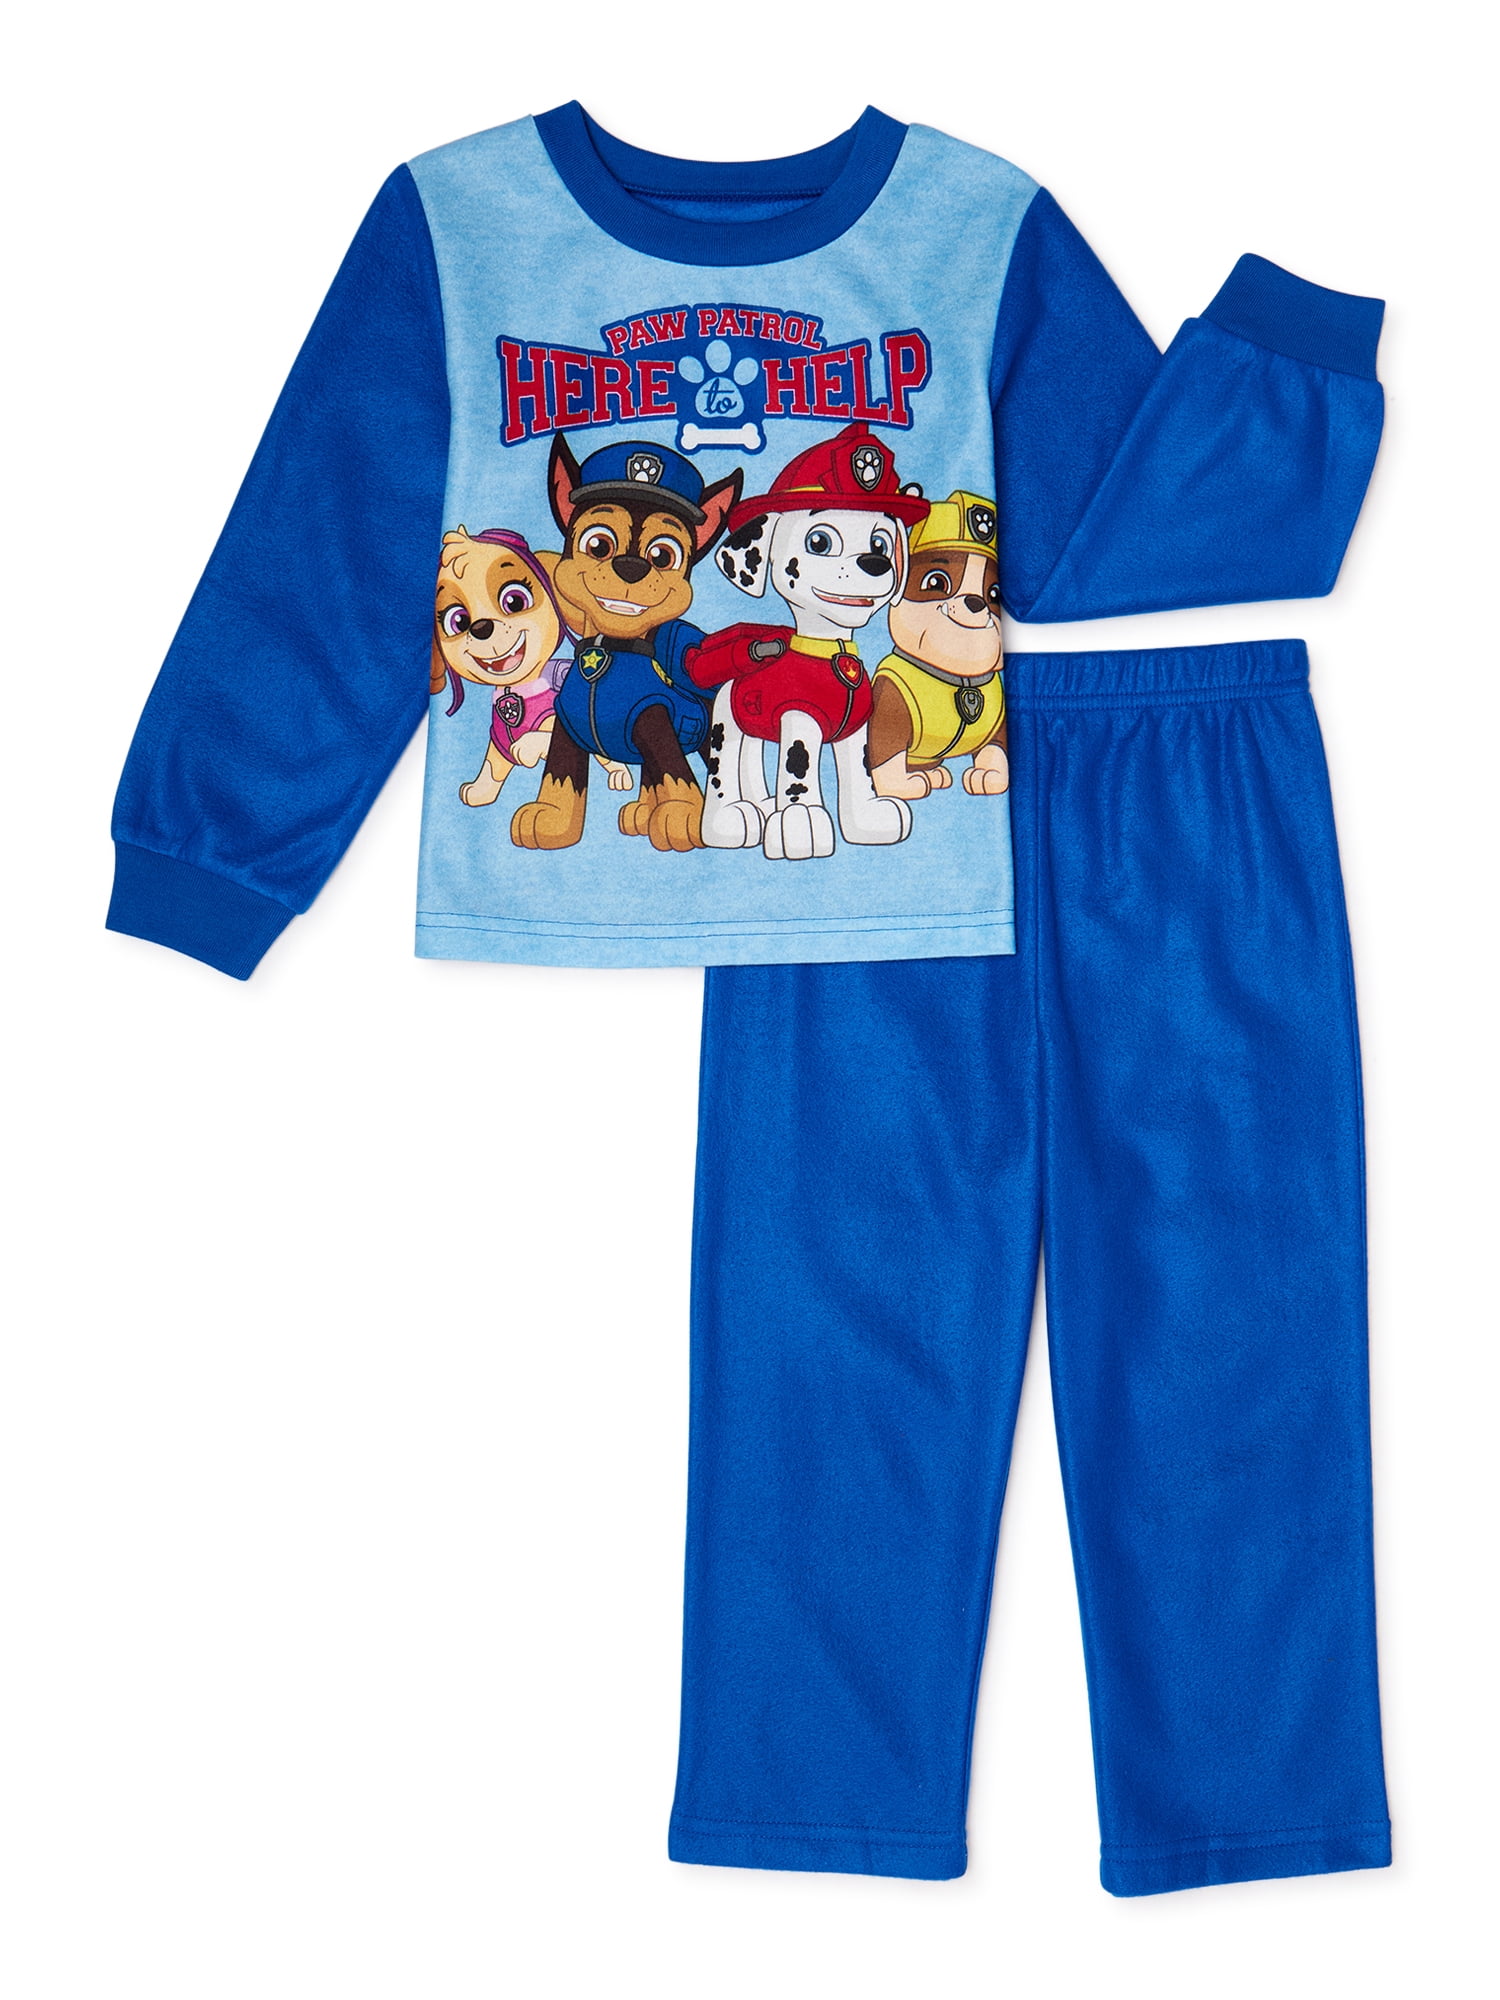 Nickelodeon Paw Patrol Toddler Girl 3-Piece Pajama Set NWT $32 Skye Marshall 2T 